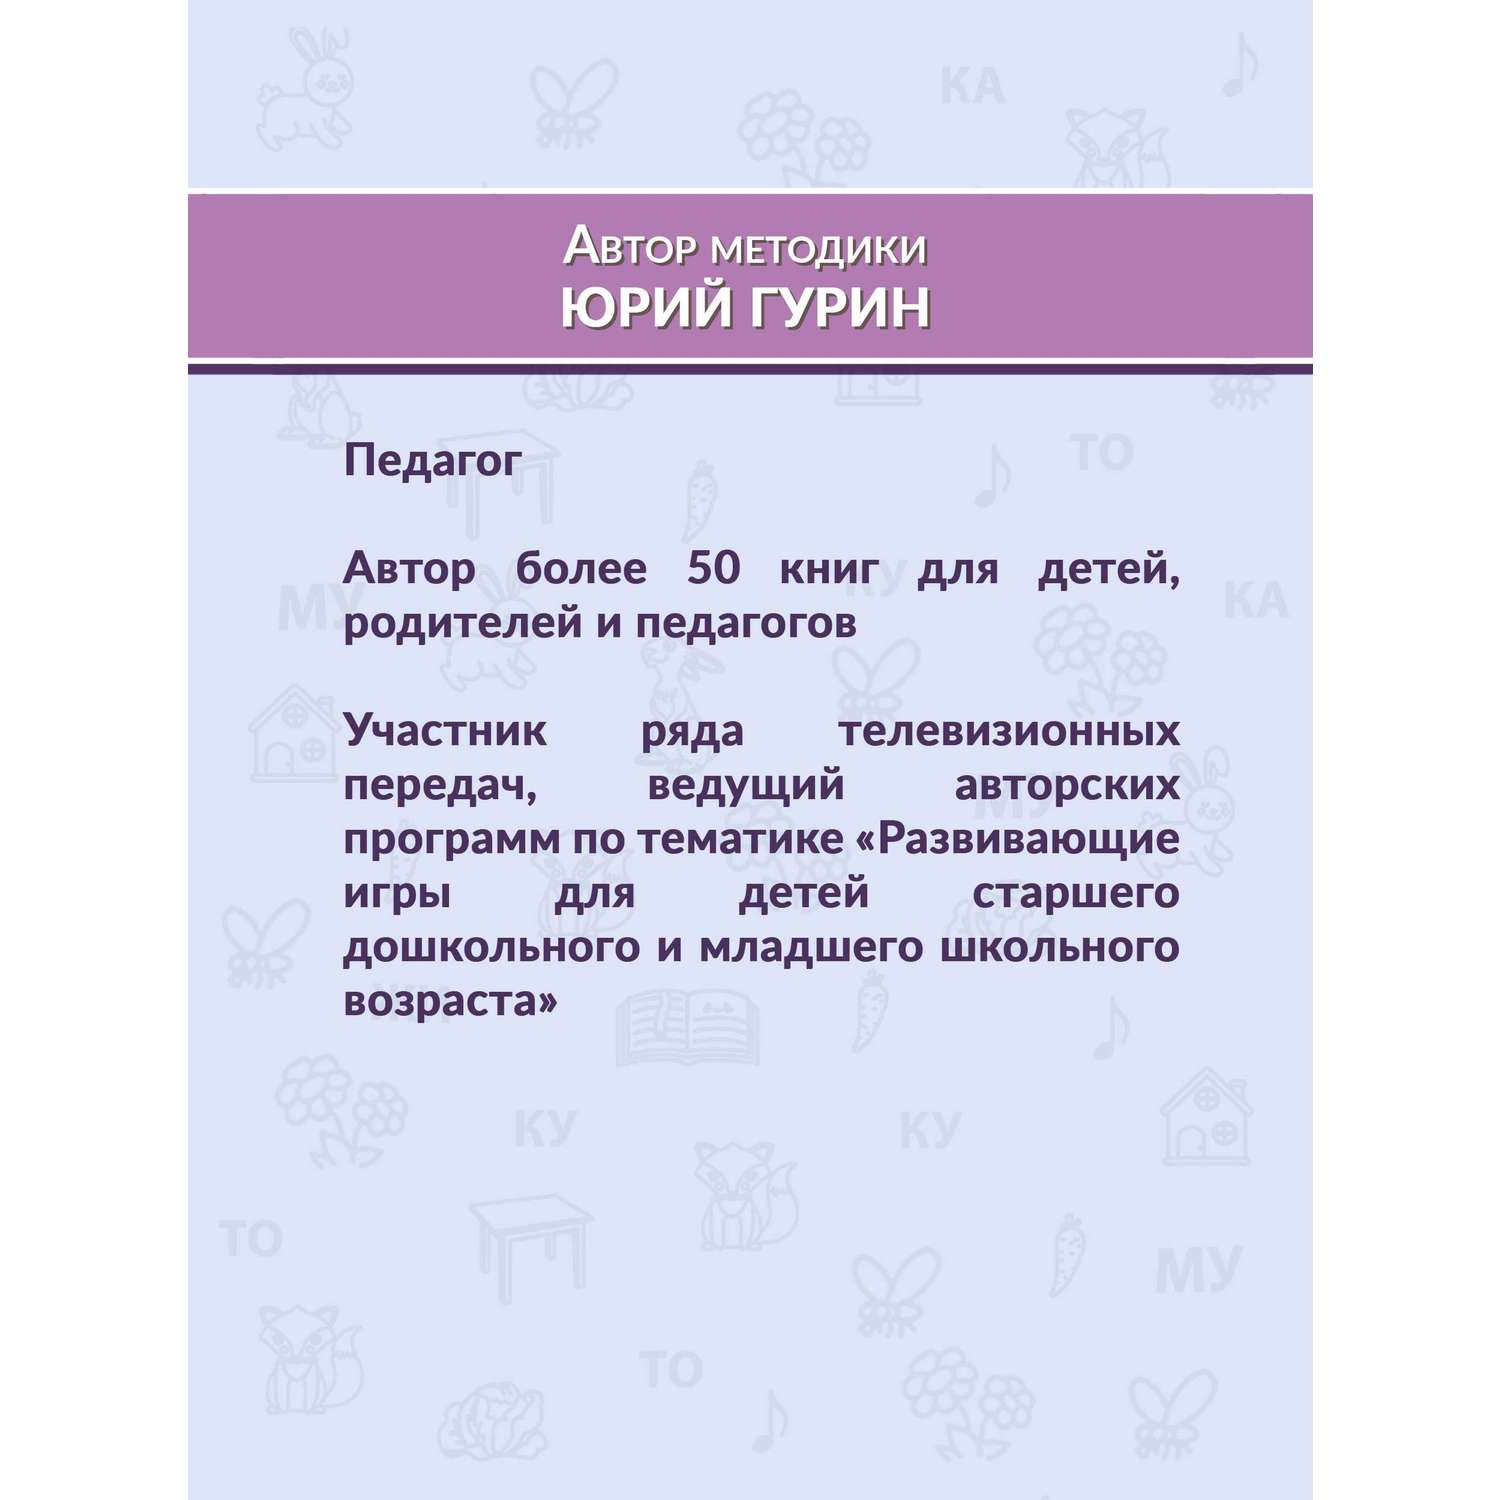 Детский набор магнитных пластмассовых букв русского алфавита (106 элементов)